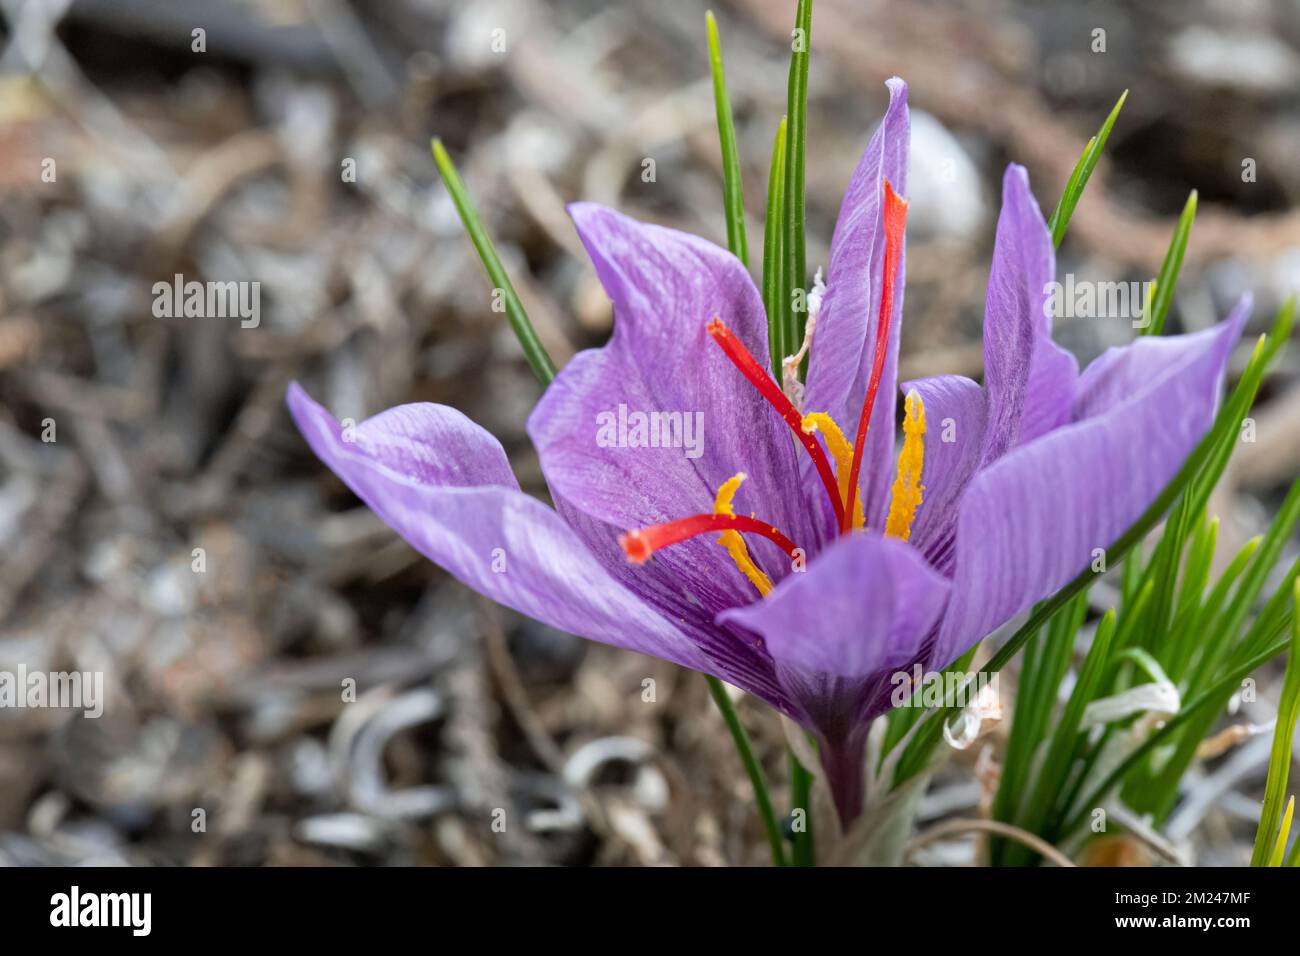 Croco allo zafferano (Crocus sativus), AKA: Croco autunnale in fiore. I suoi stigmi sono conosciuti come lo zafferano delle spezie. Foto Stock